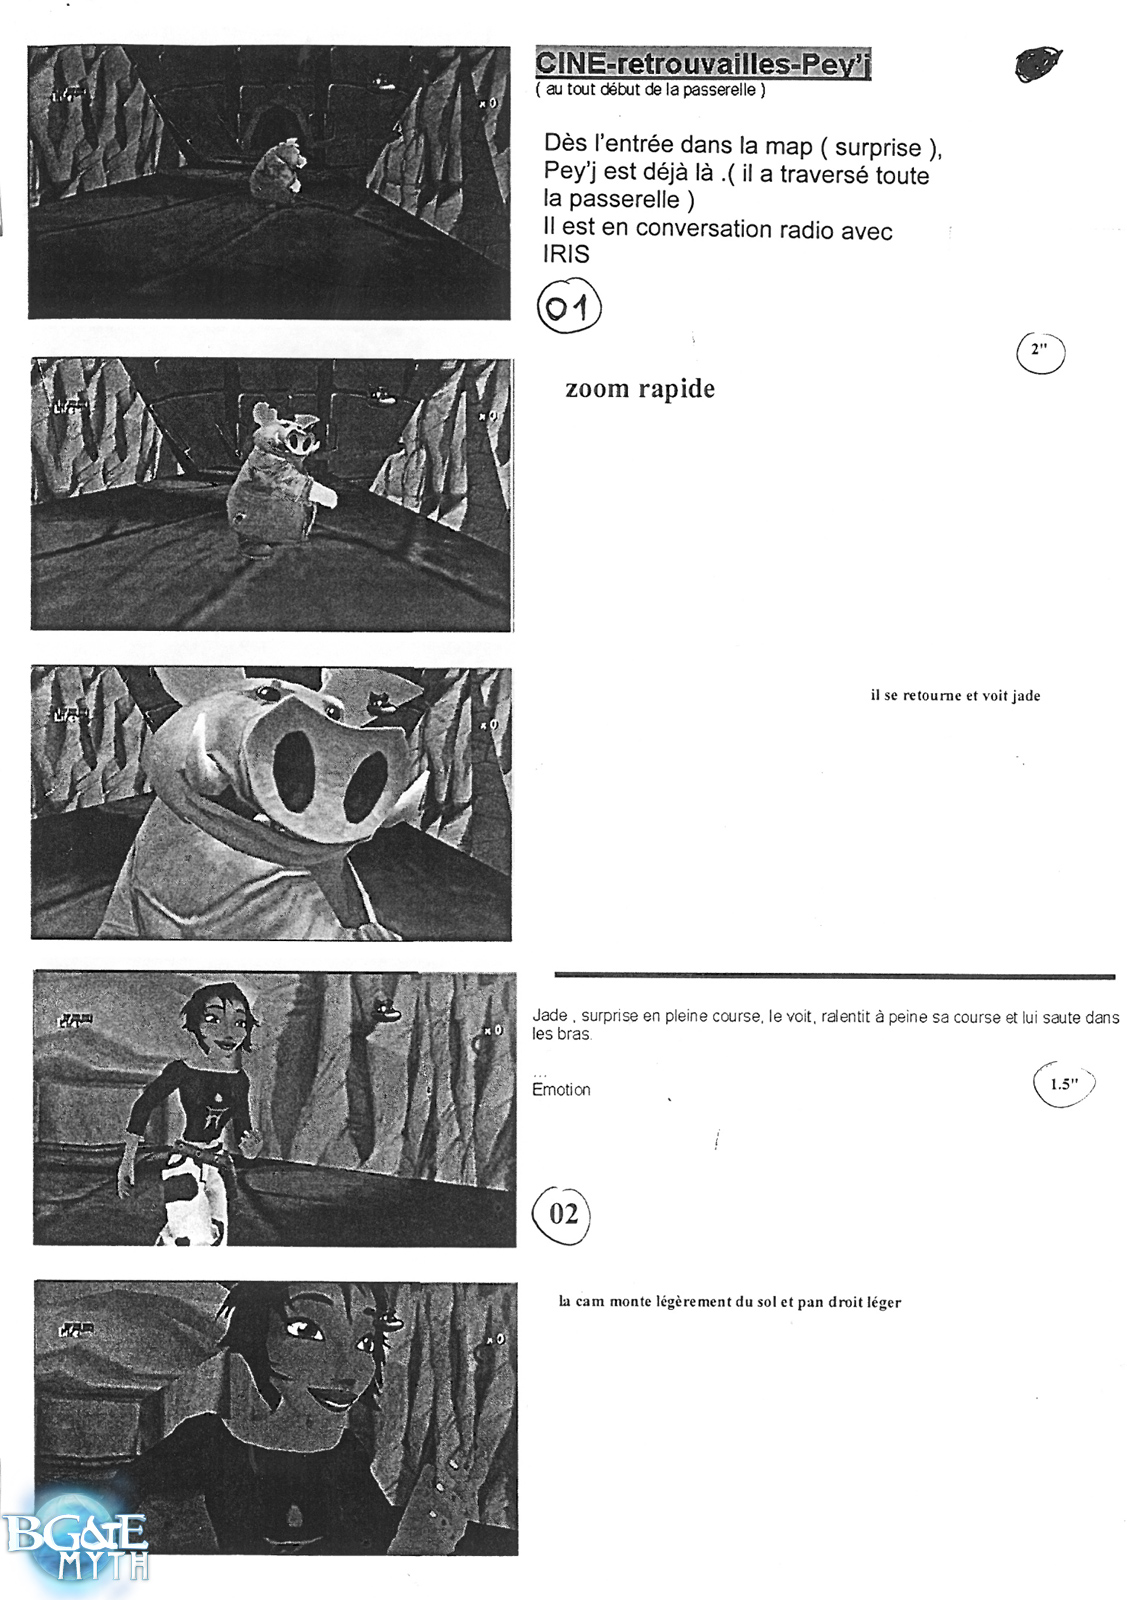 [Storyboard] Retrouvailles sur Sélène - Page 1